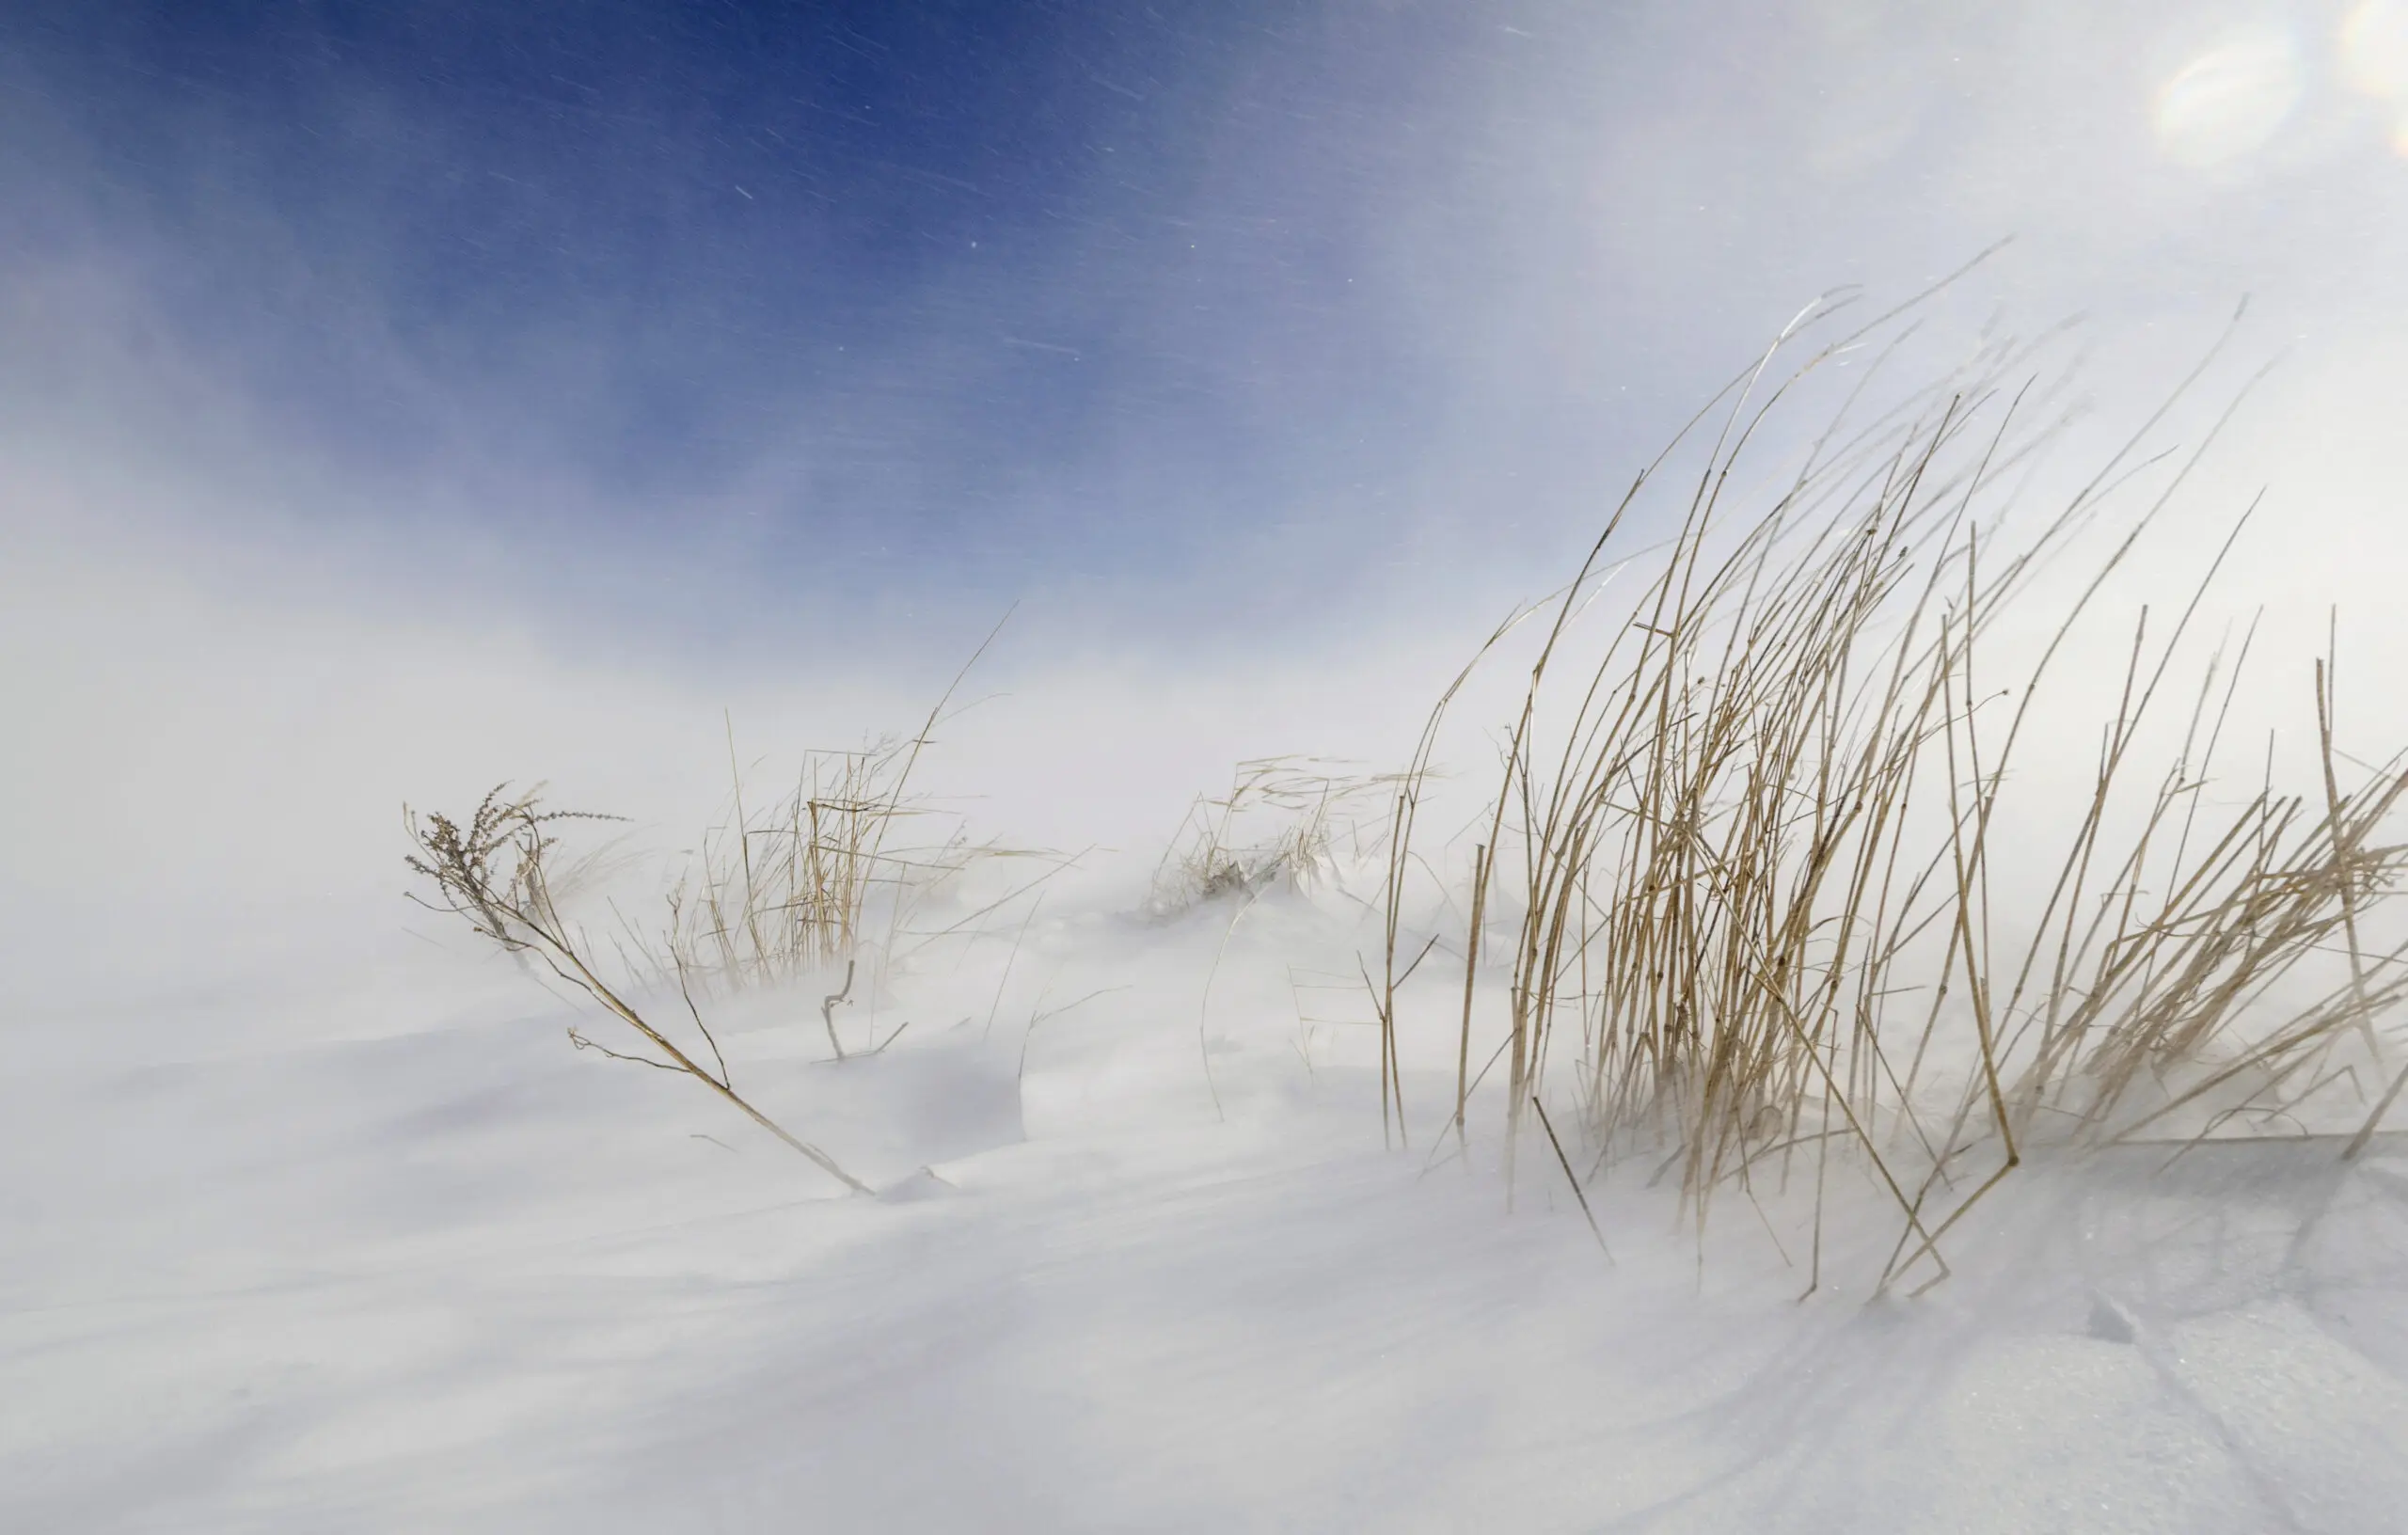 Wandbild (5299) Sunny snowstorm by Carlo Tonti präsentiert: Details und Strukturen,Natur,Landschaften,Gräser,Strände,Sonstige Naturdetails